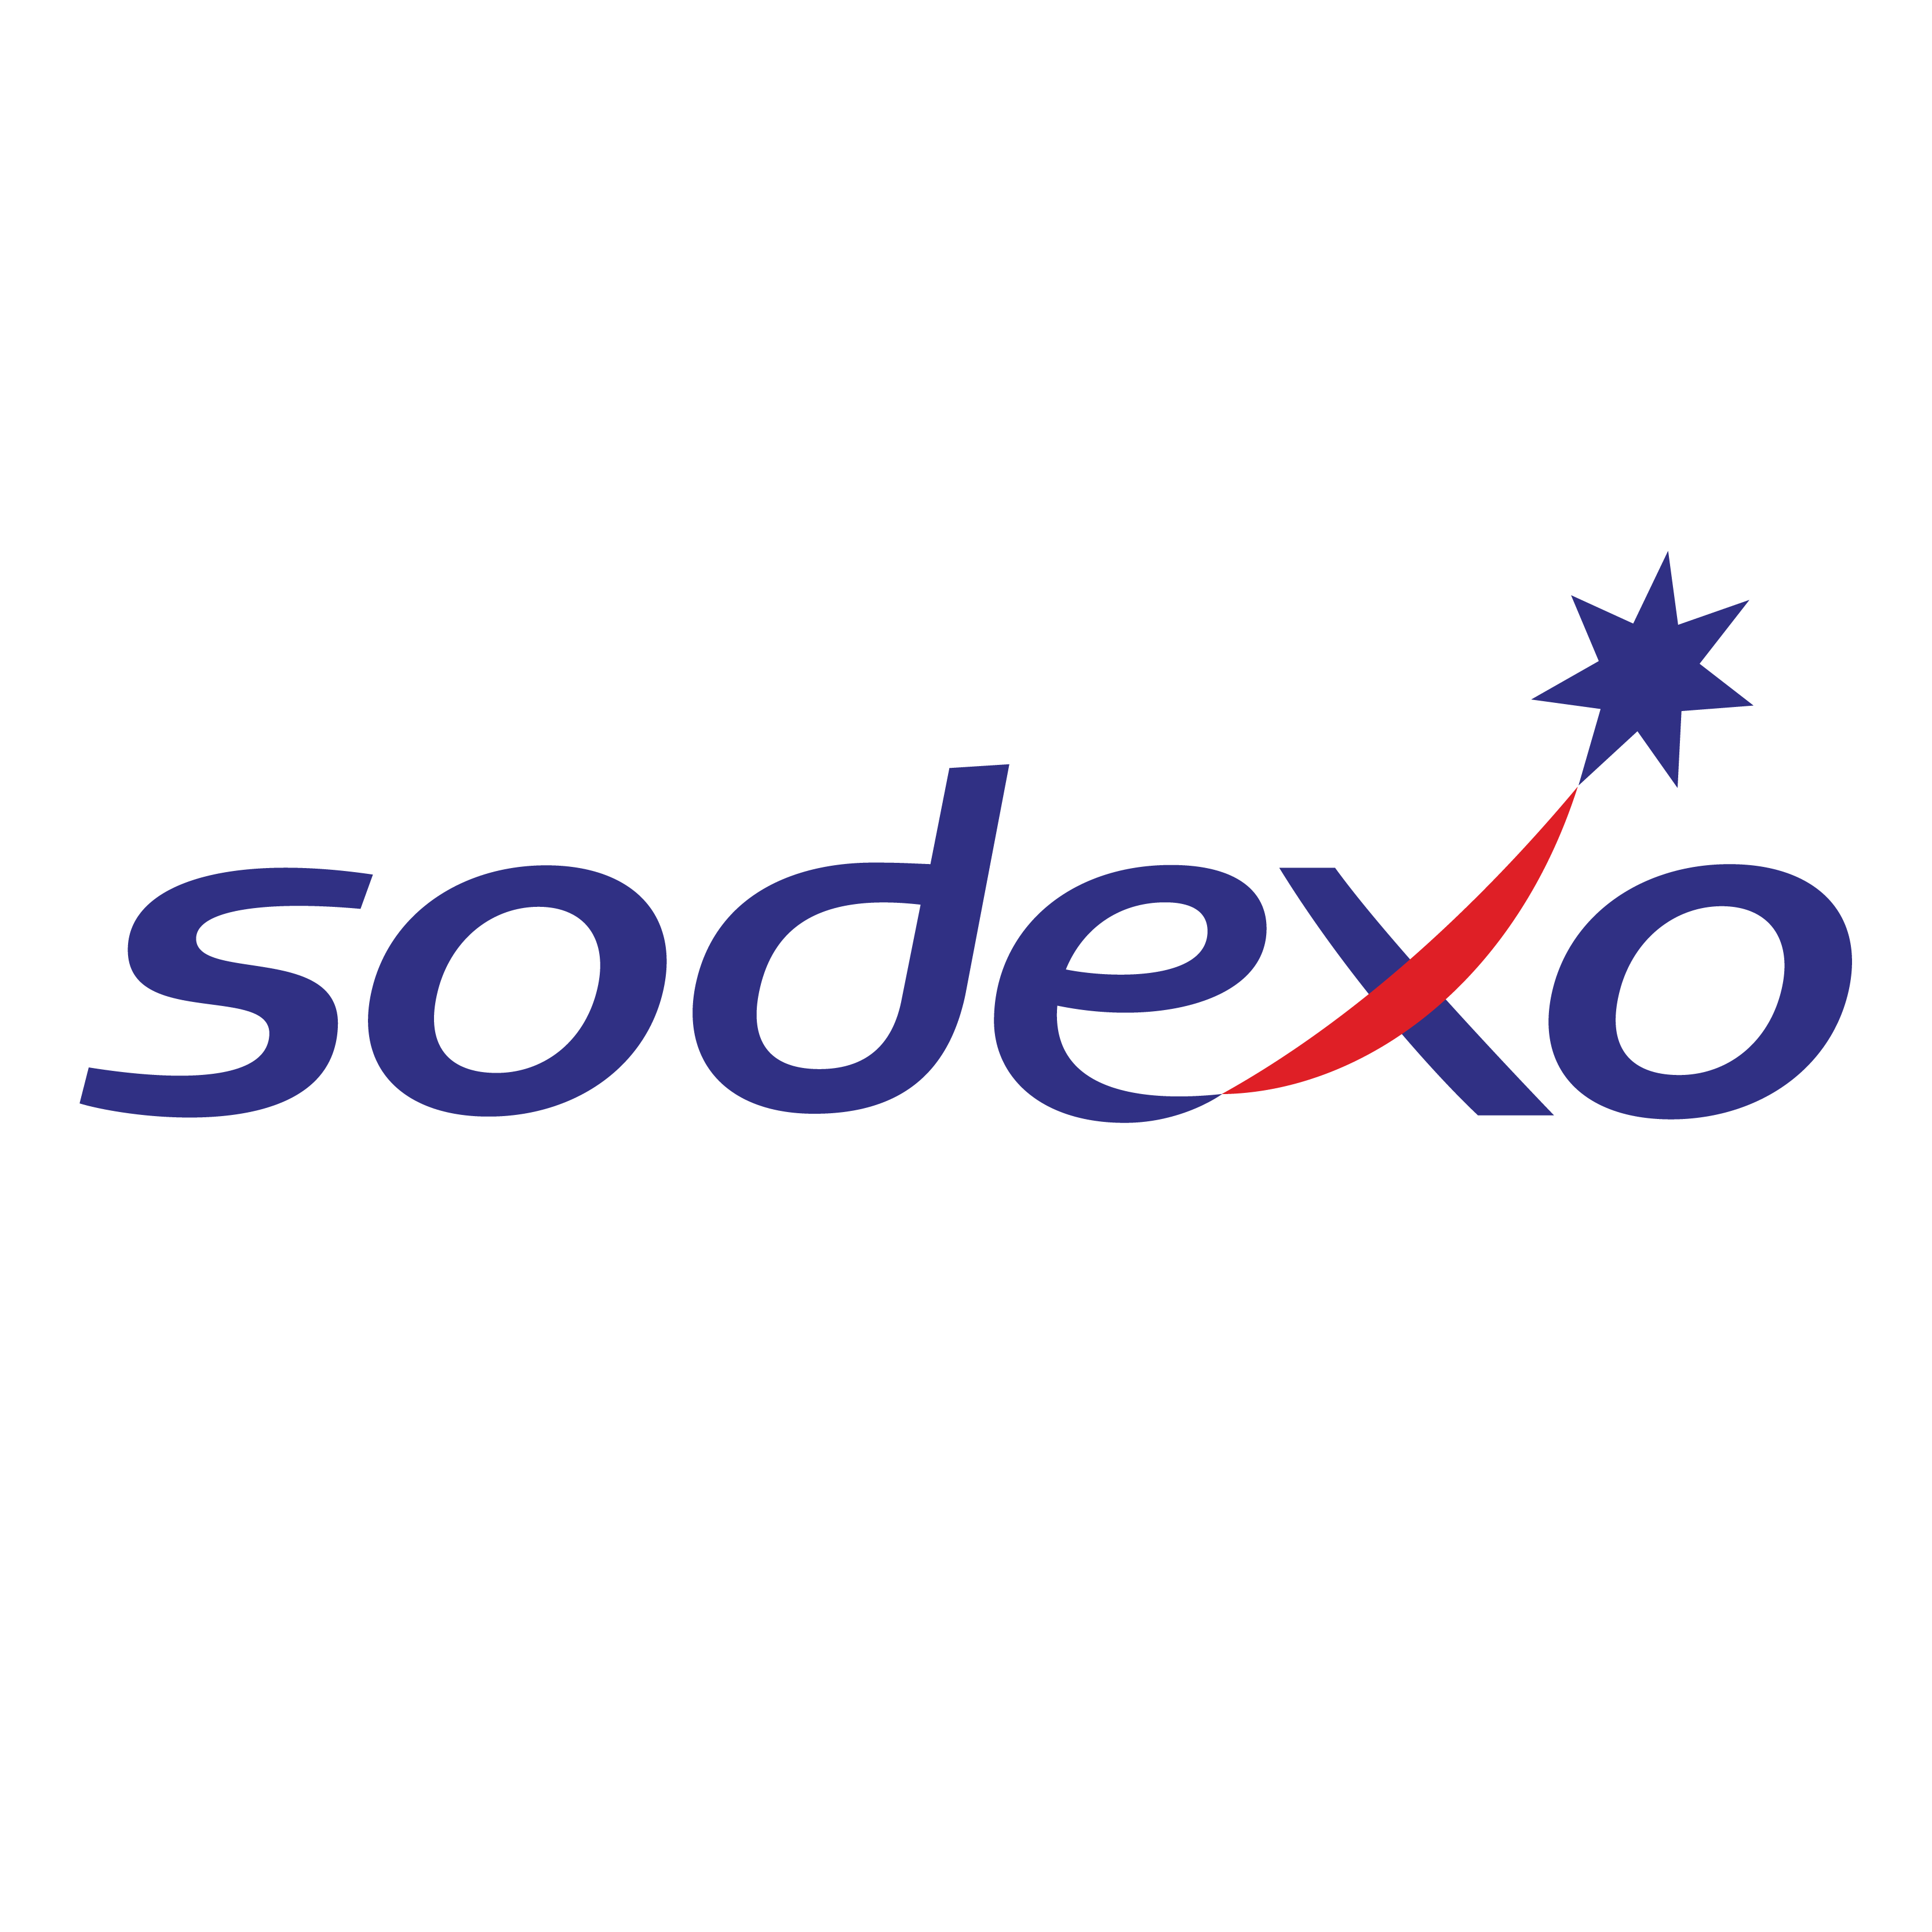 Die Dubai, Dubai, United Arab Emirates Agentur Cactix half Sodexo dabei, sein Geschäft mit SEO und digitalem Marketing zu vergrößern